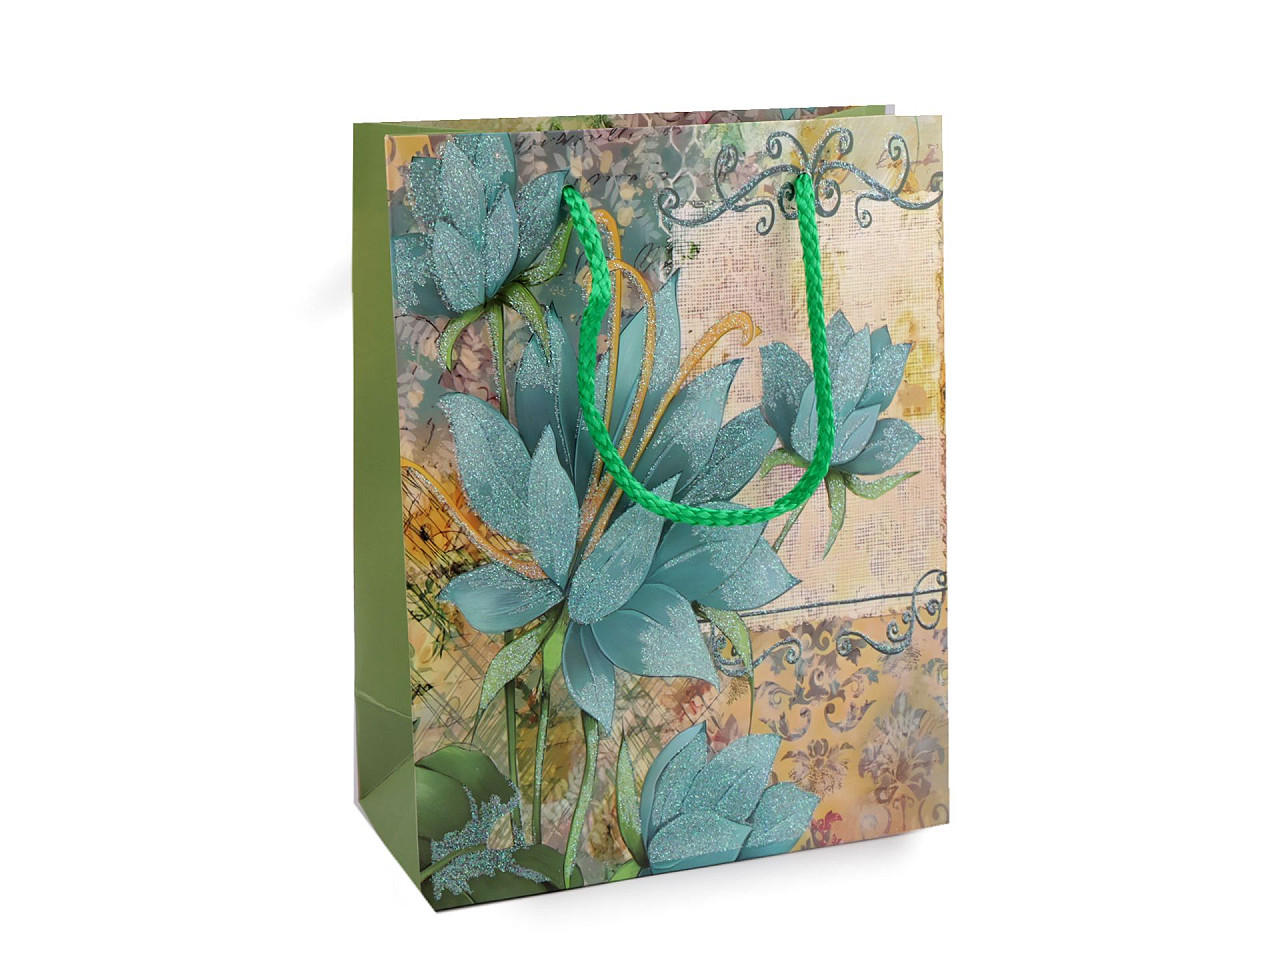 Dárková taška s glitry květy, barva 3 zelená šalvěj světlá